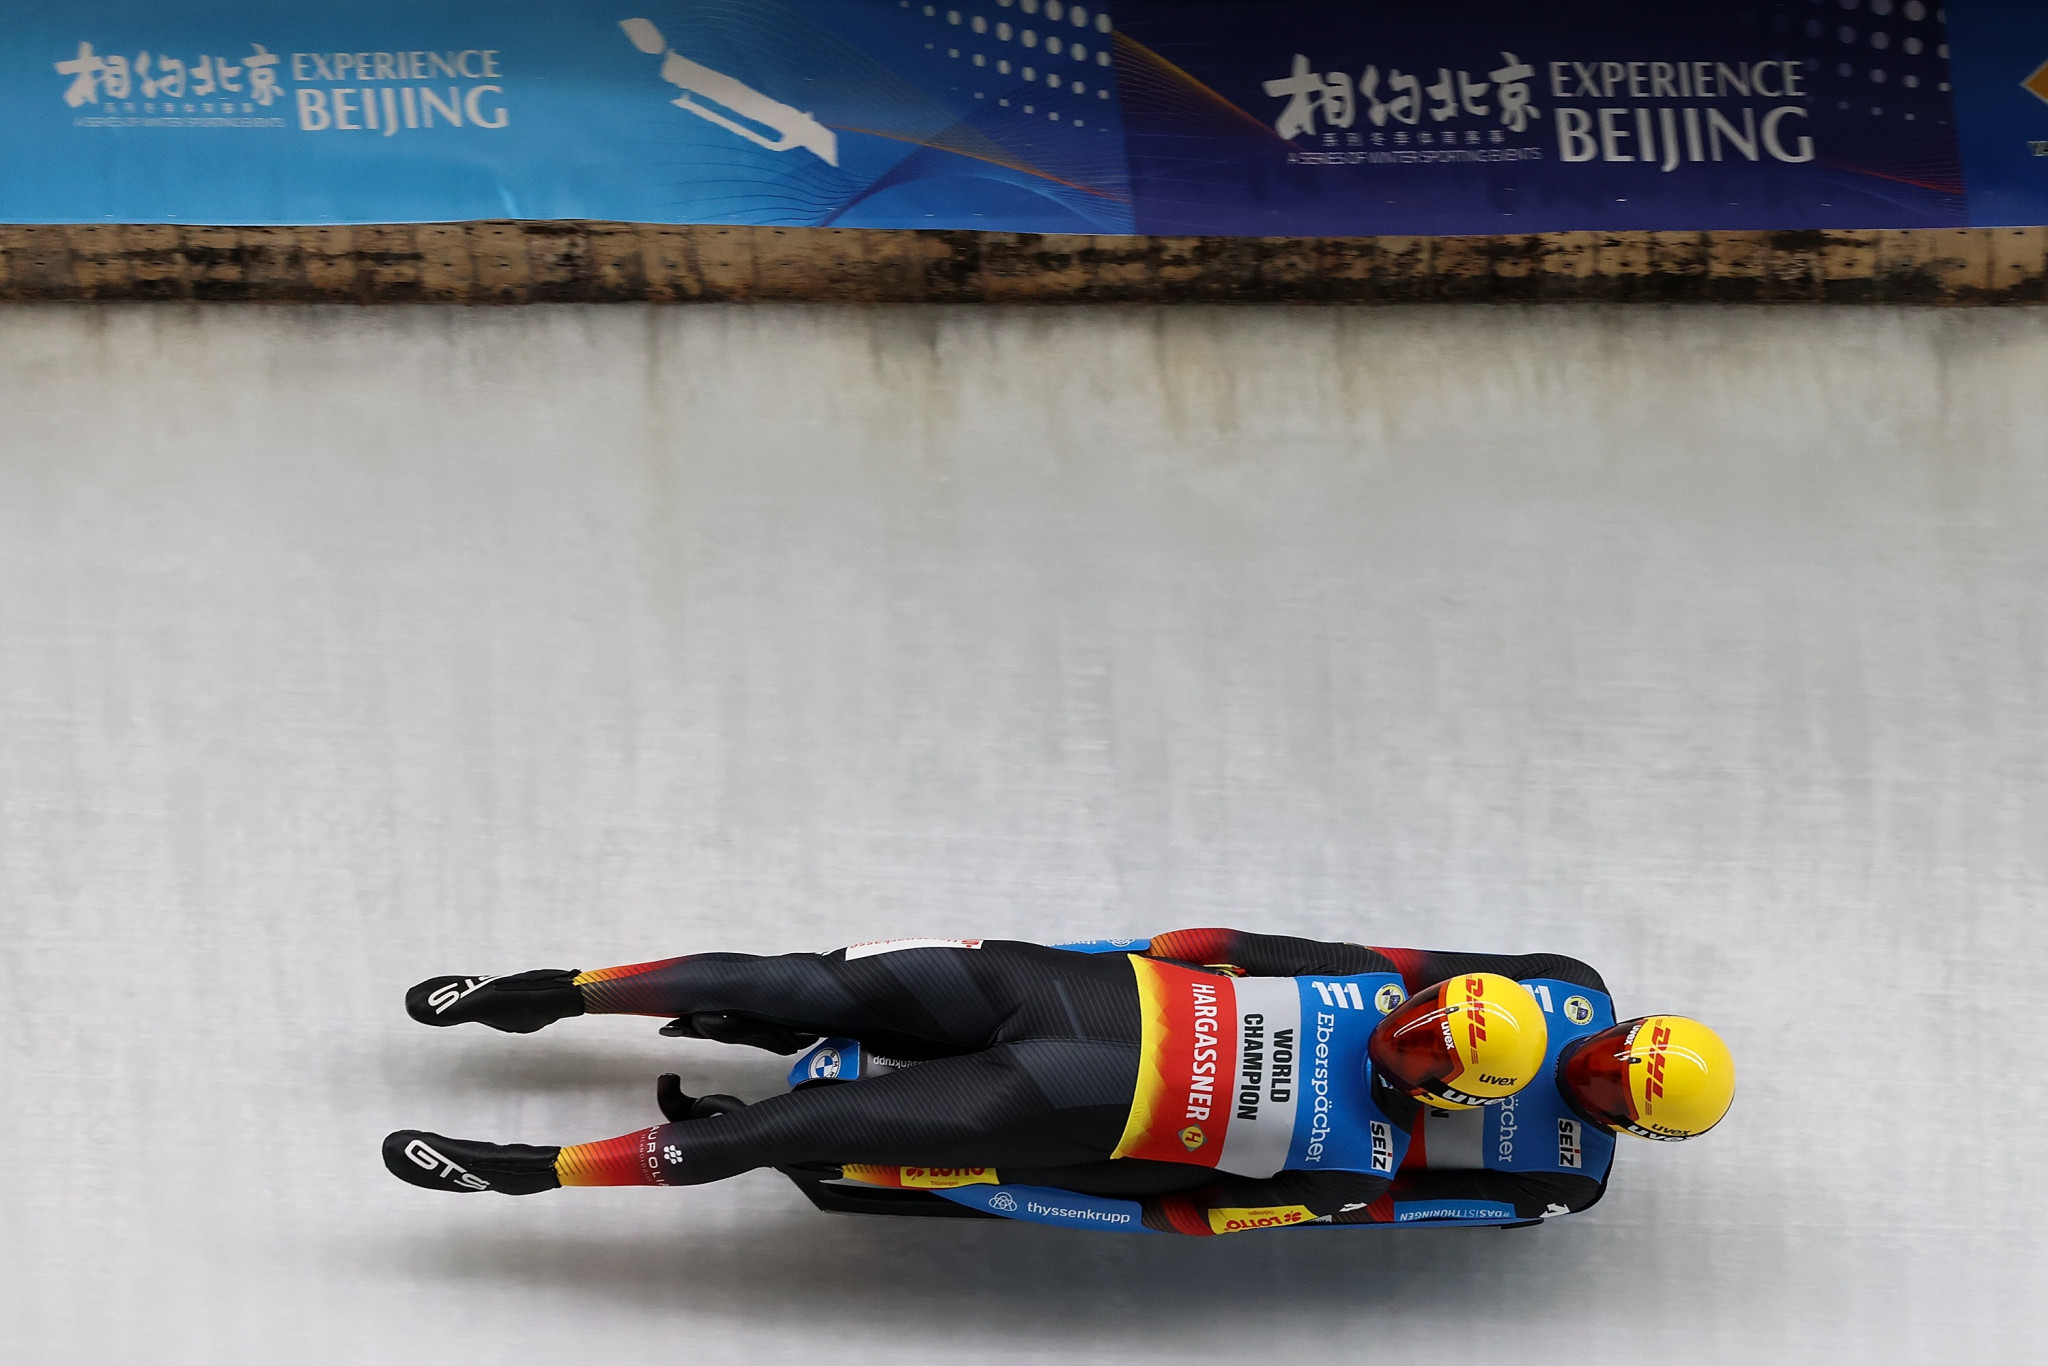 Eggert and Benecken impress on Beijing 2022 track in Luge World Cup opener